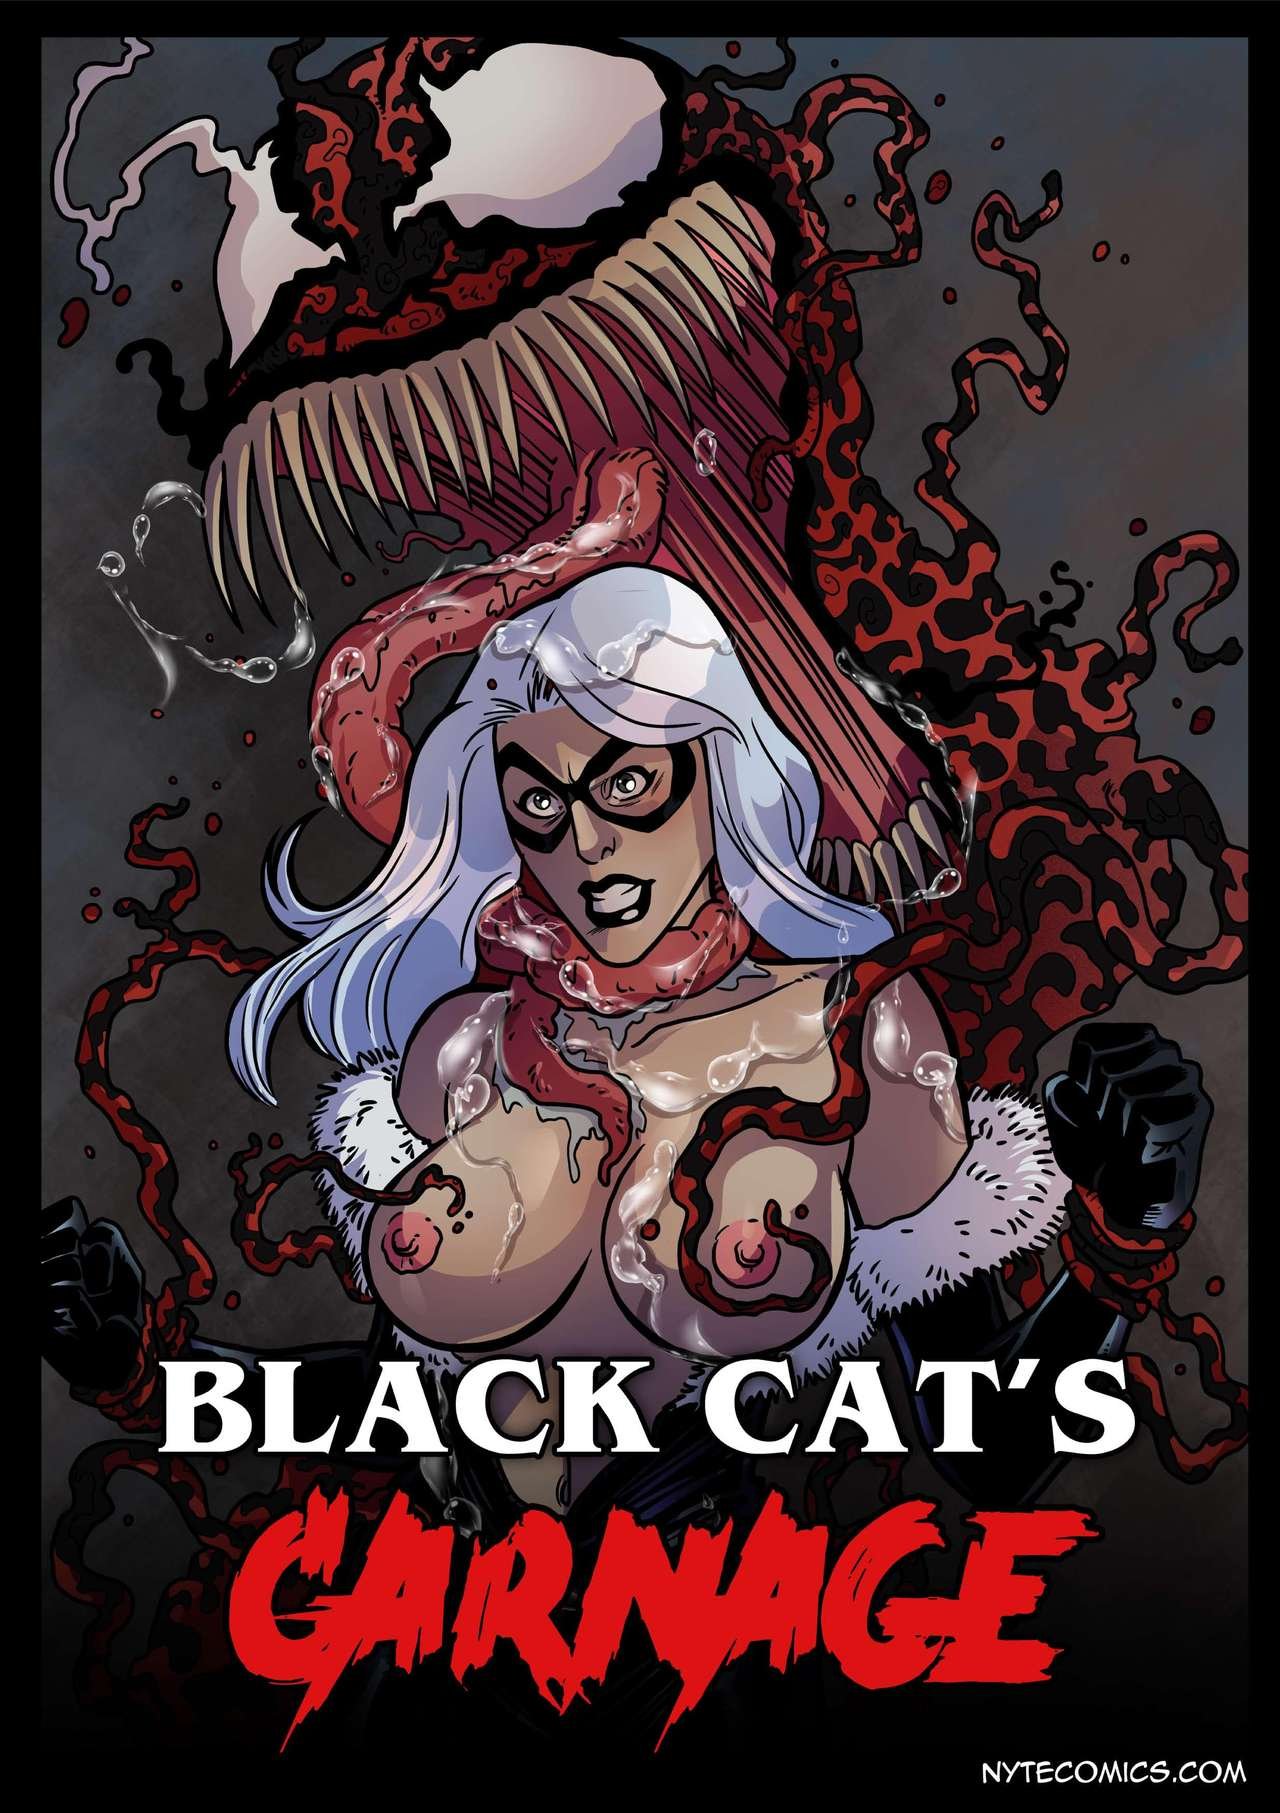 Black Cat Cartoon Porn - Black Cat's Carnage comic porn - HD Porn Comics